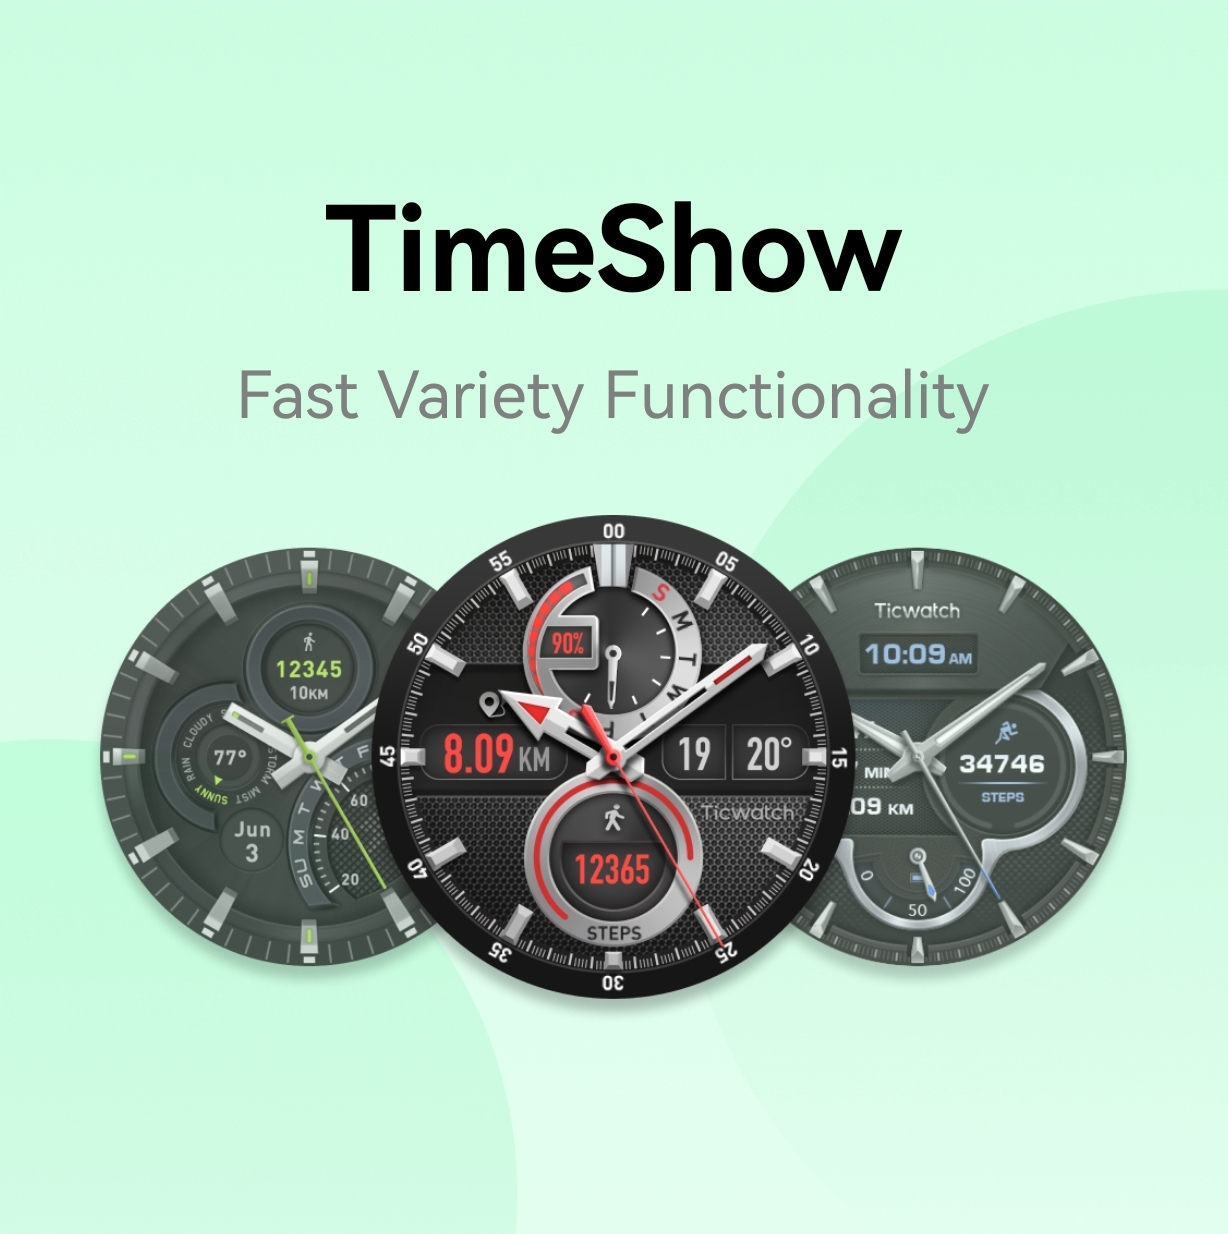 Программа для циферблатов часов. Приложение для часов. Циферблаты для умных часов на андроид. Лучшие циферблаты для Galaxy watch. Циферблаты для фитнес часов.